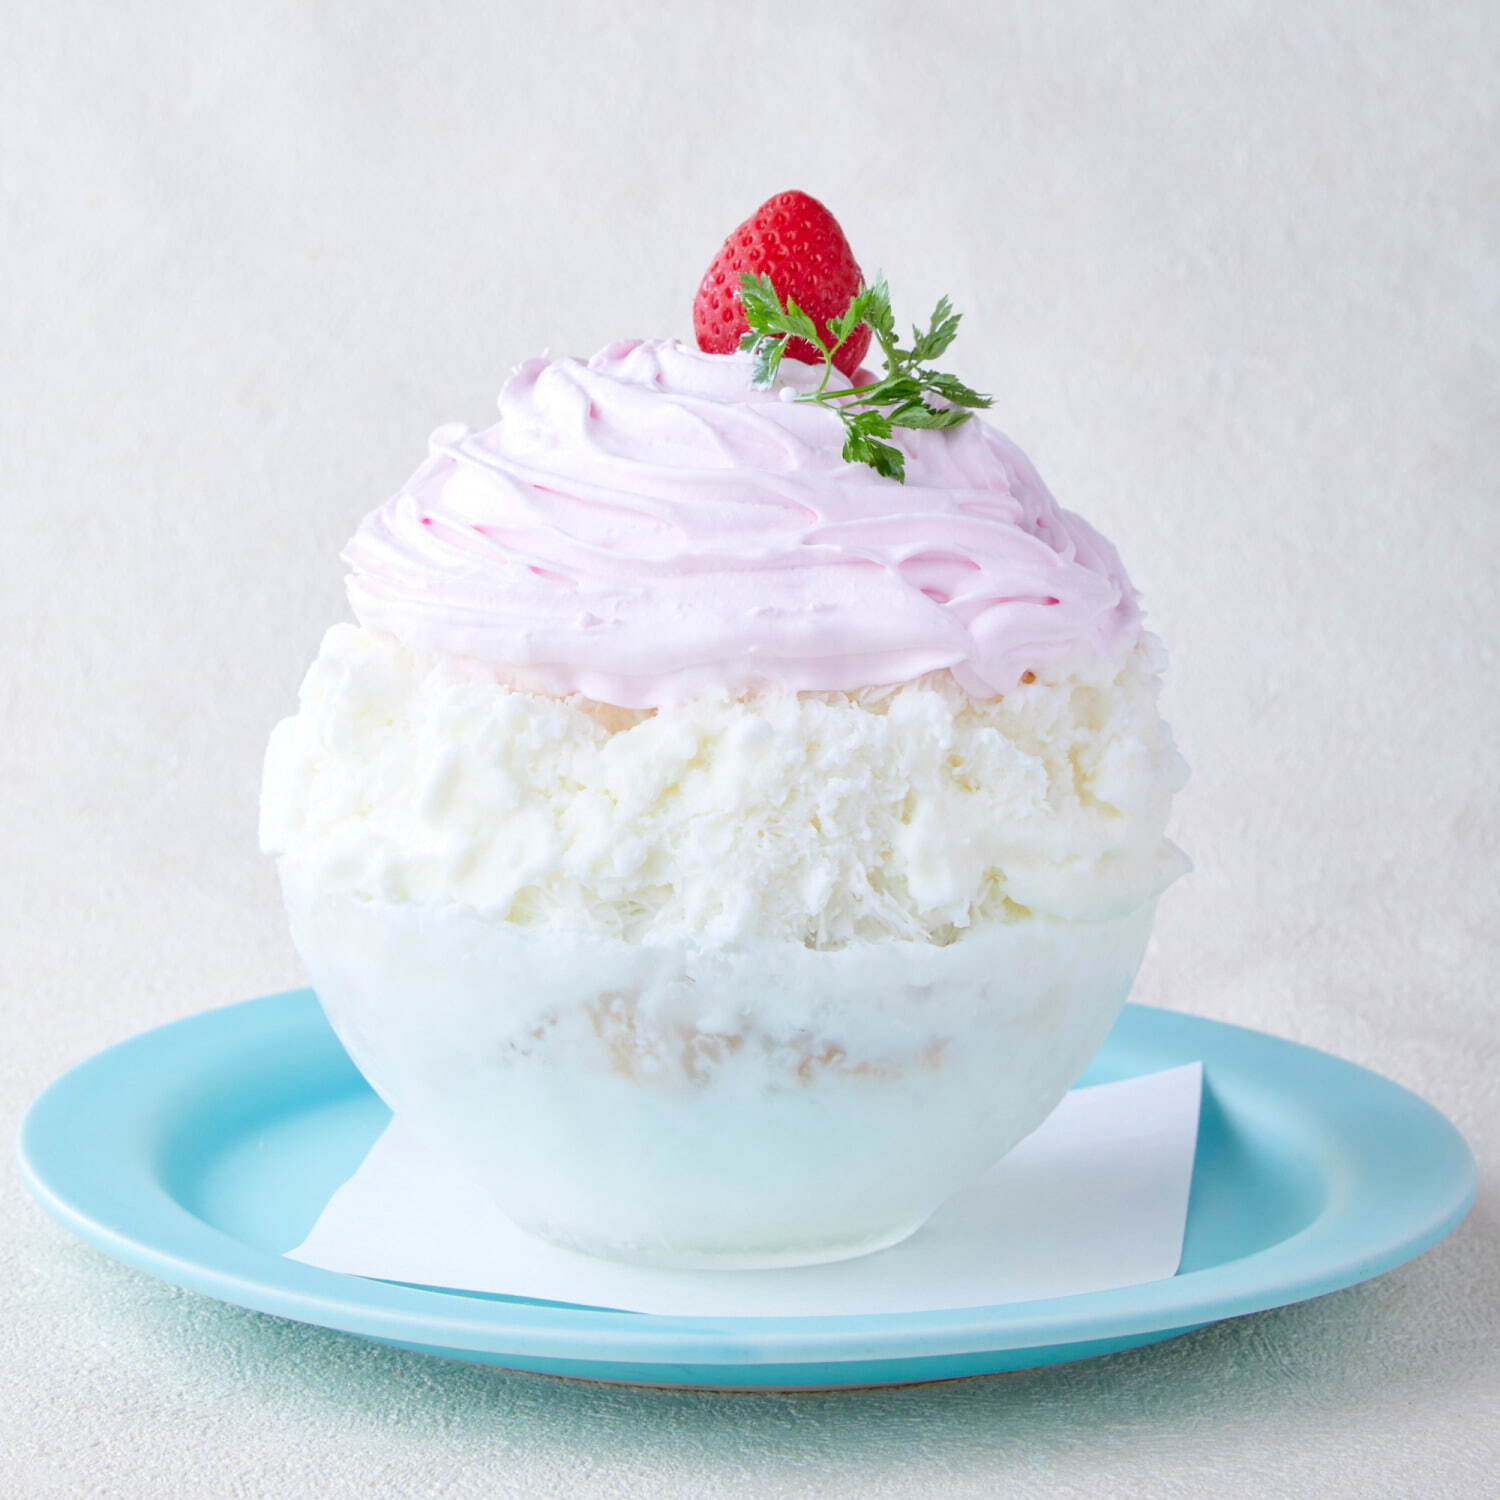 「苺のショートケーキ みるく氷」1,100円